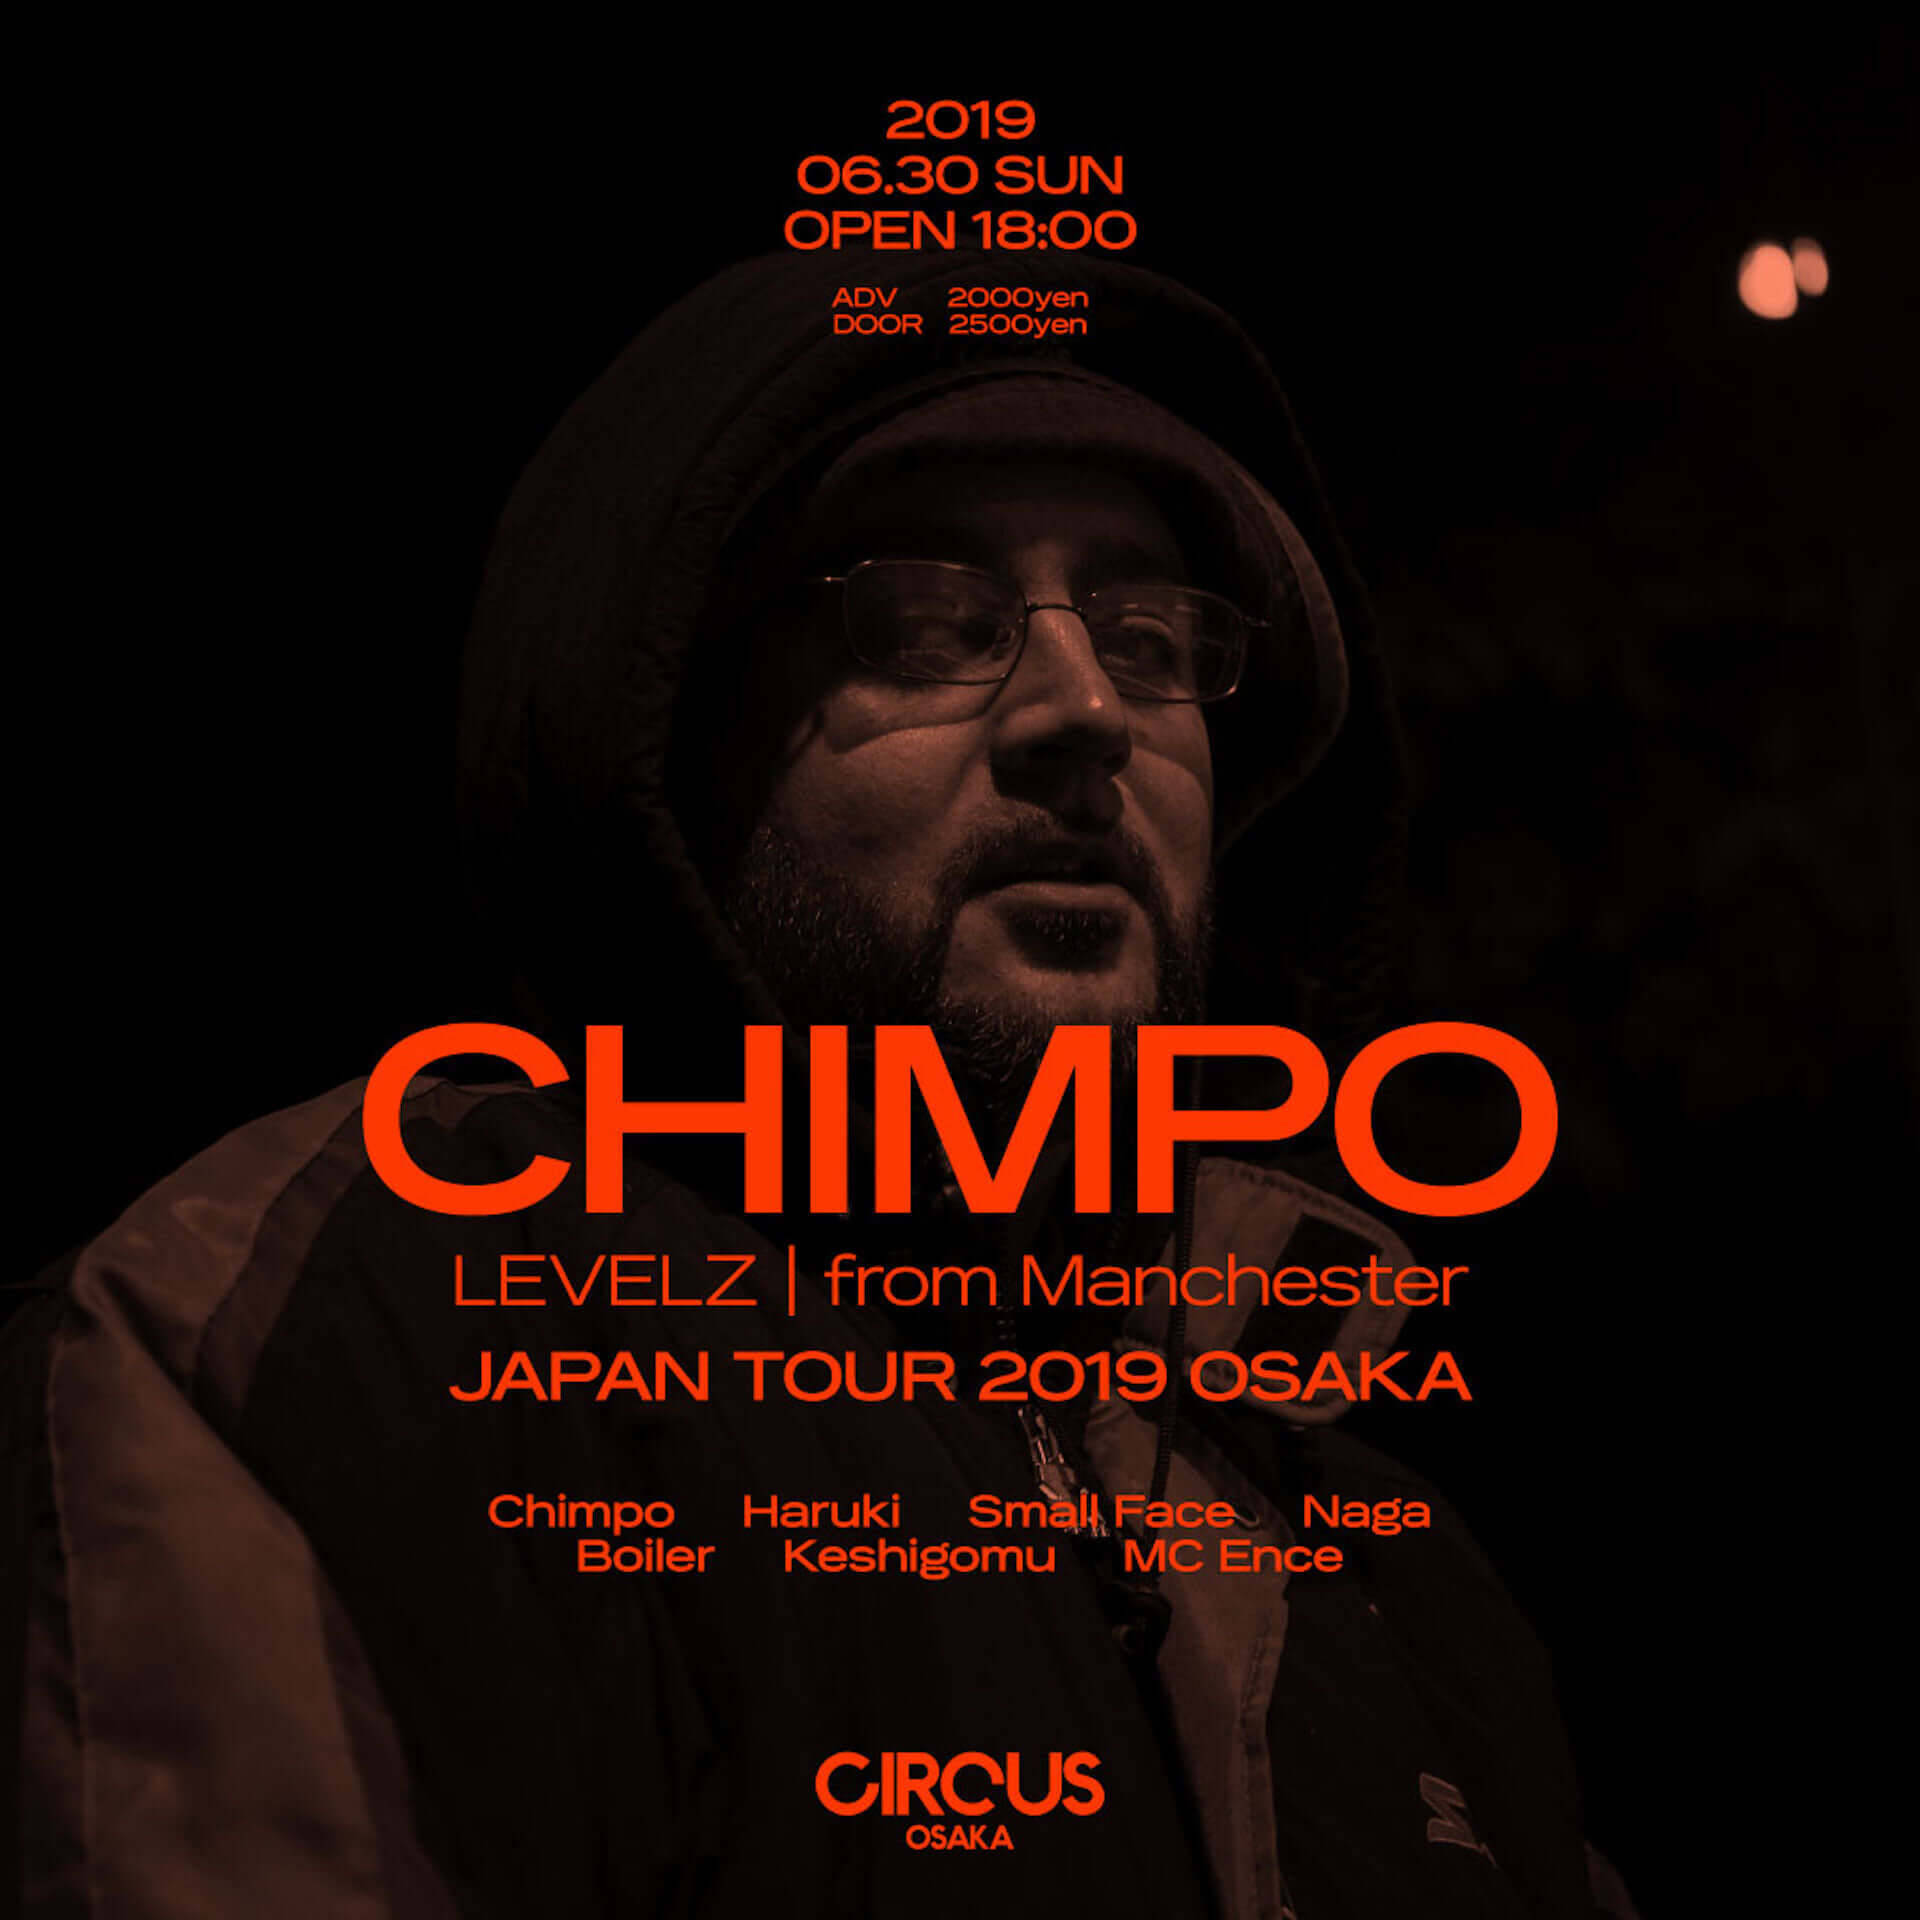 マンチェスターのベース・ミュージック・シーン筆頭LVLZの中心人物、CHIMPOが今週末CIRCUSに登場